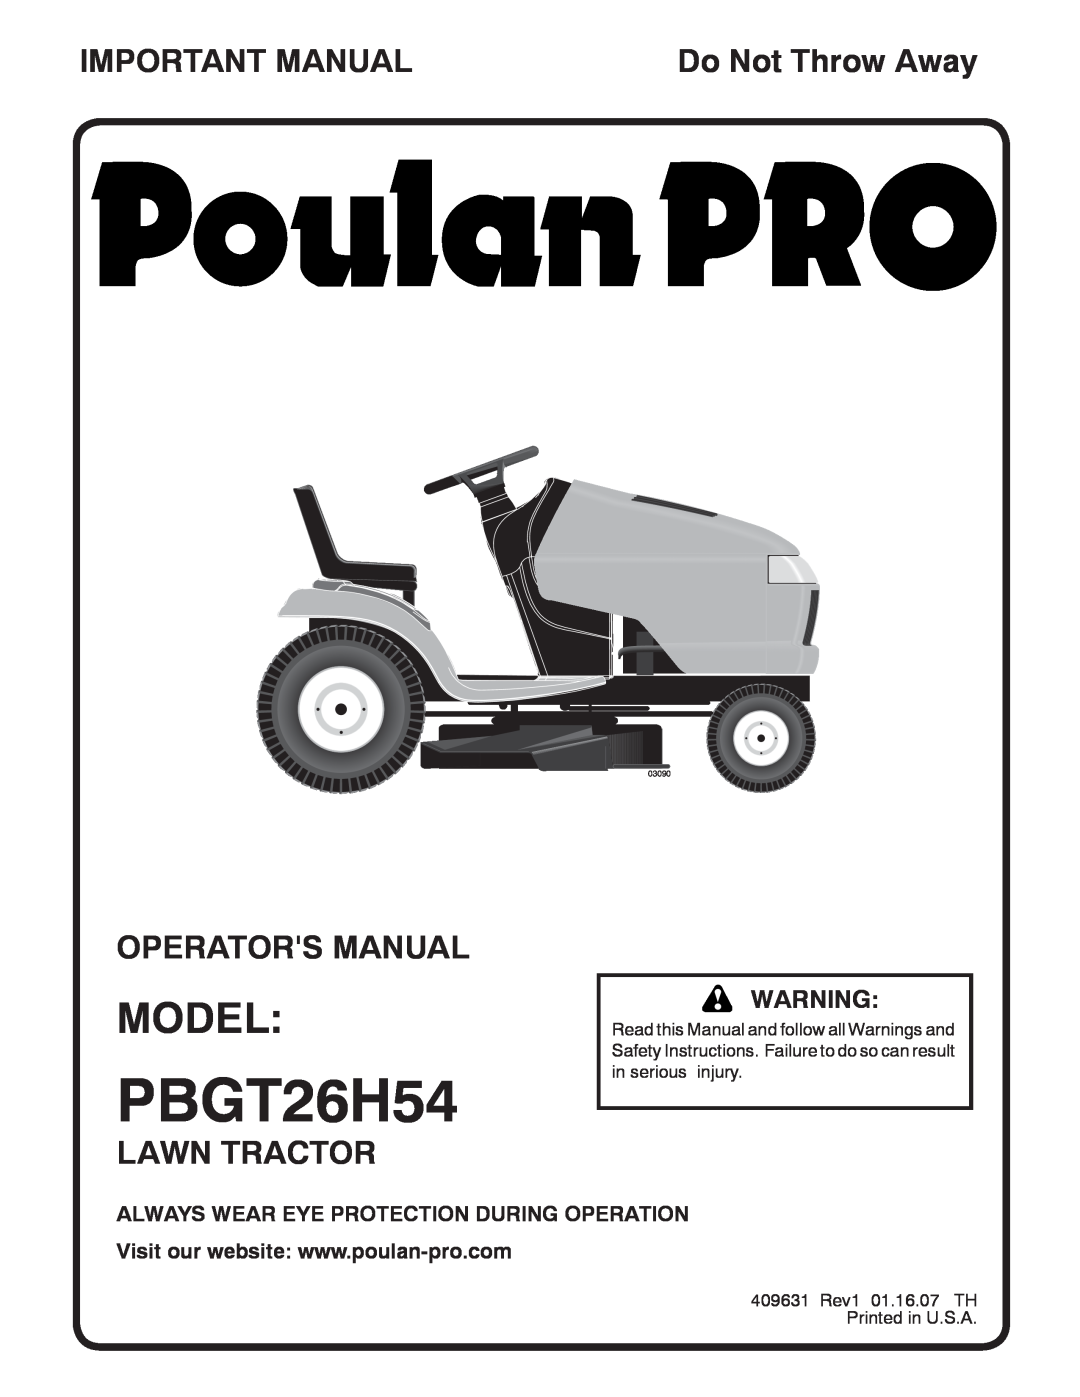 Poulan PBGT26H54 manual Model, Important Manual, Repair Parts Manual, Garden Tractor, Do Not Throw Away, 03090 